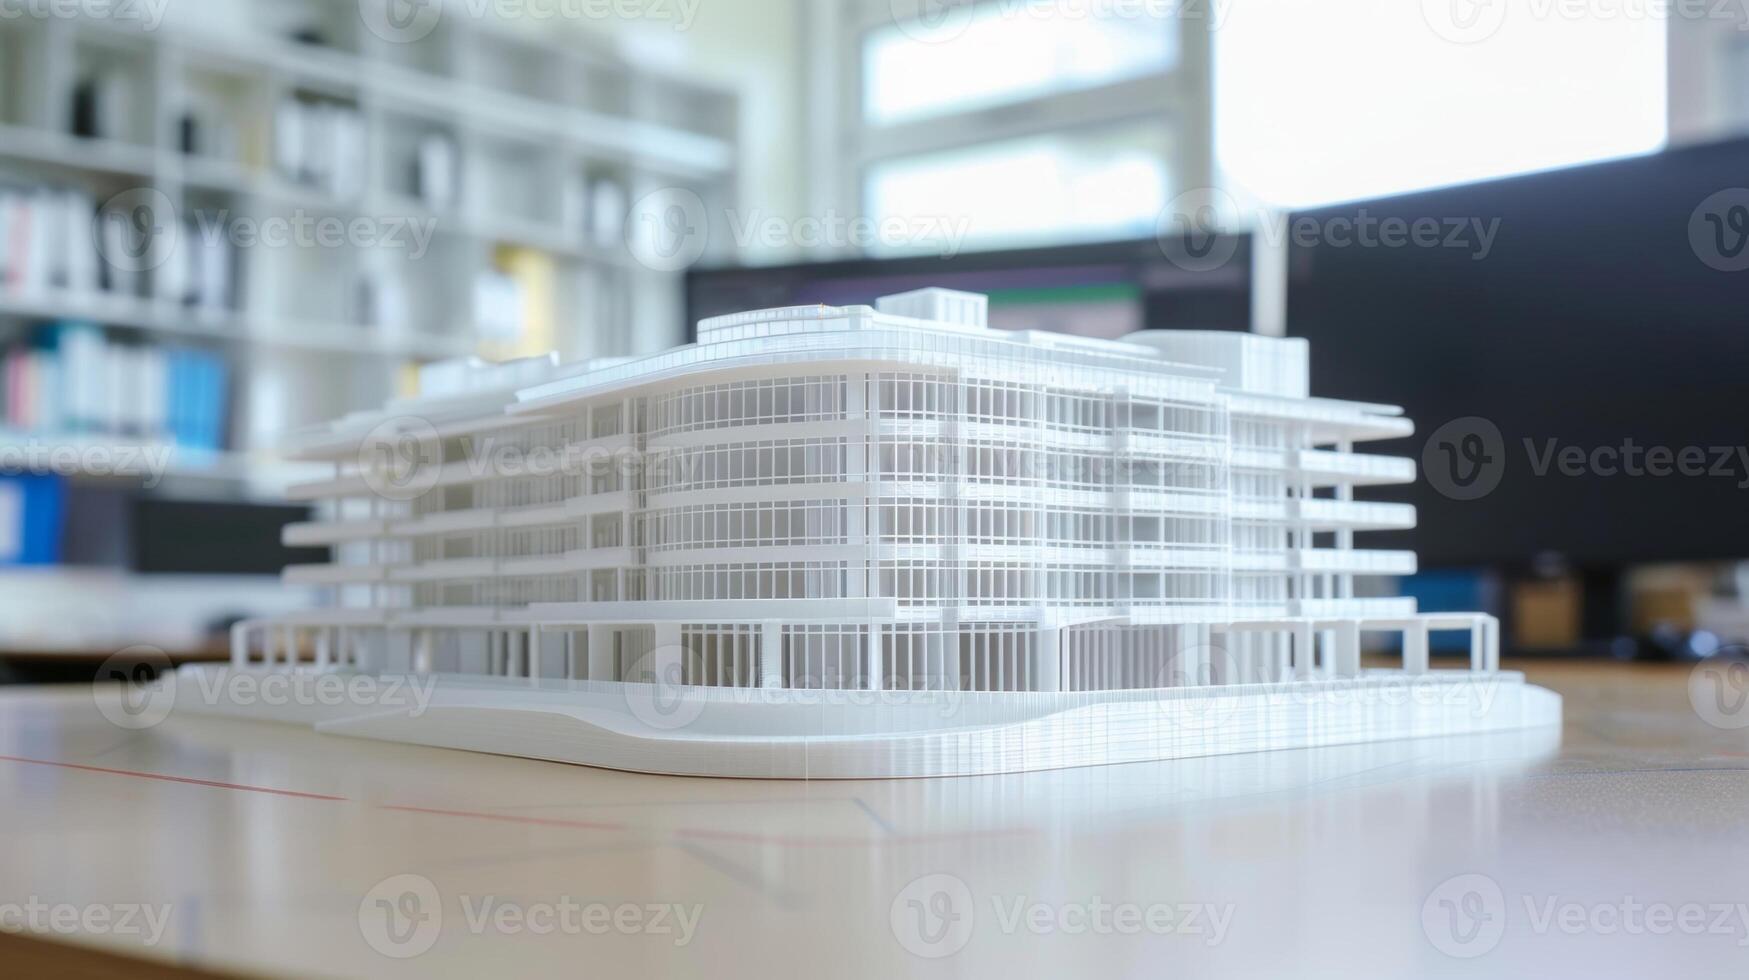 une imprimé en 3D modèle de une bâtiment établi de une bim modèle étant revu et approuvé par tout équipe membres avant construction commence photo